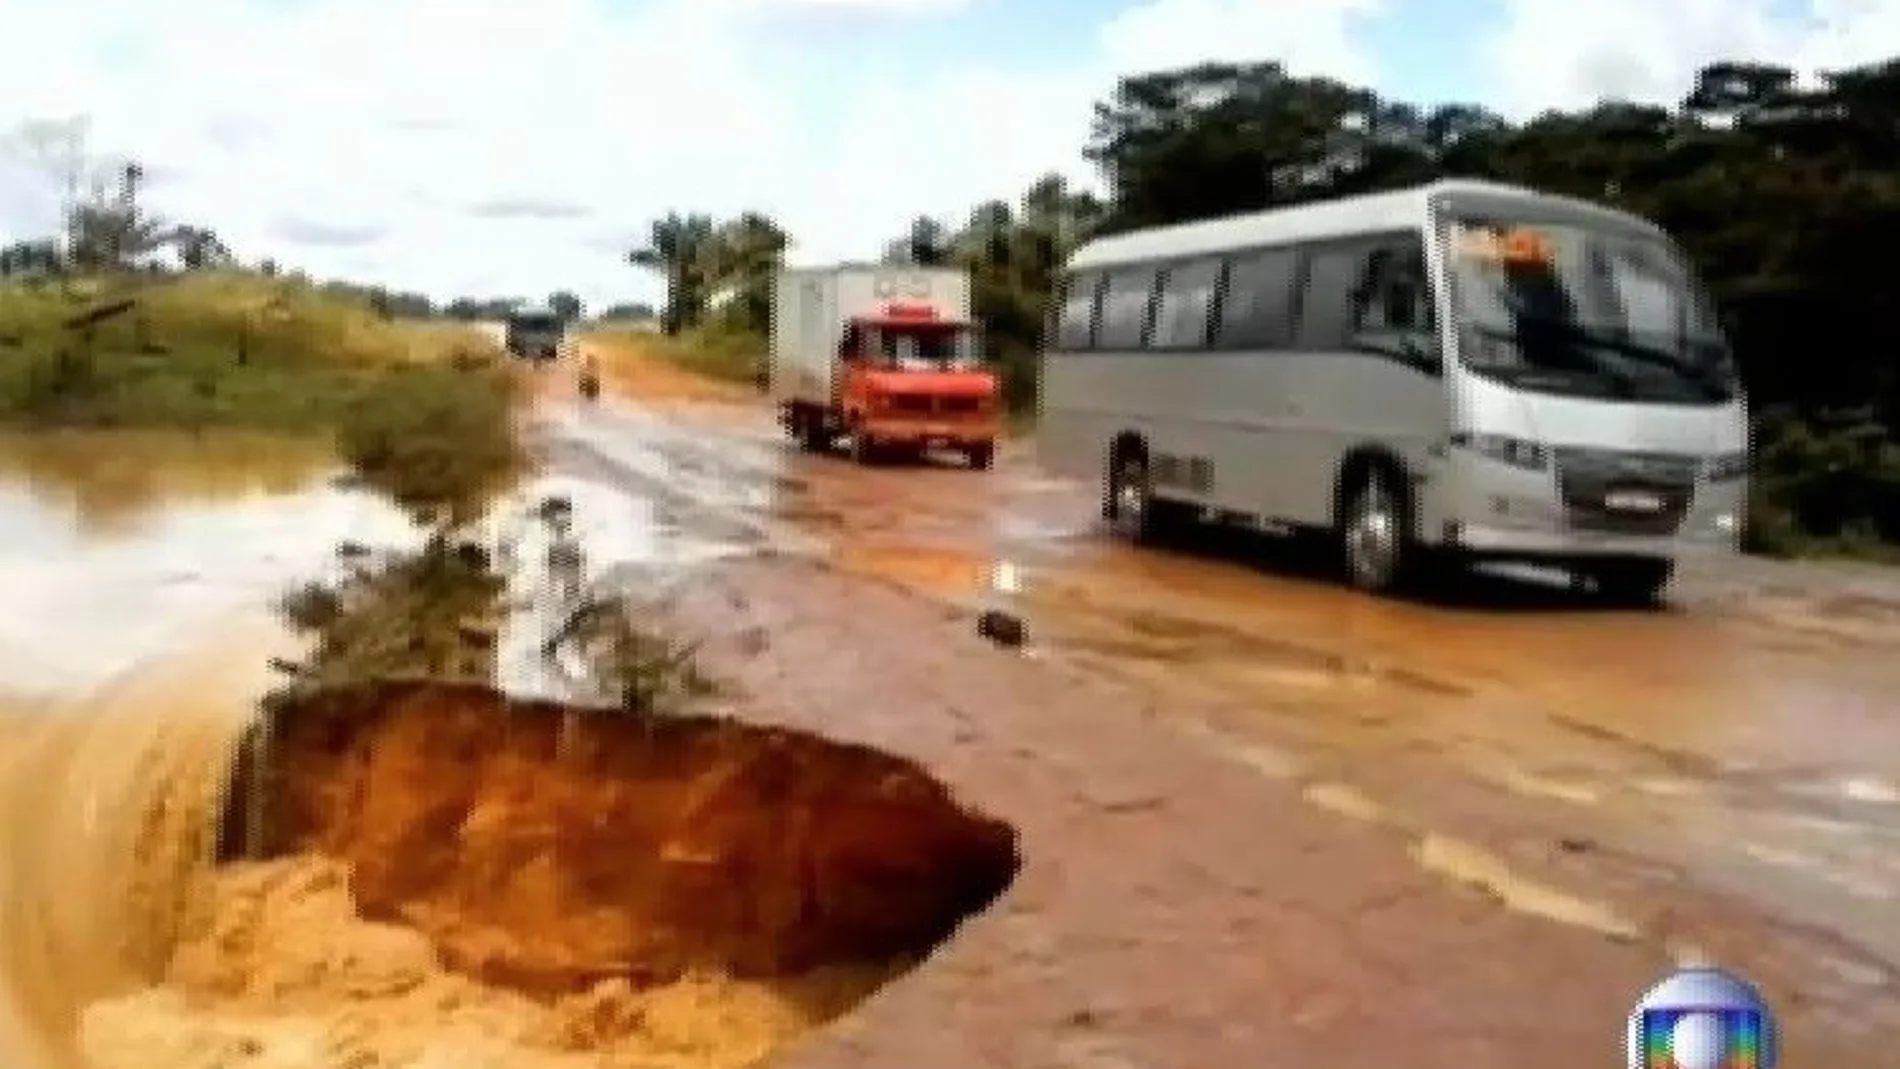 El autobús fue enguido por el cráter que se ve en la imagen